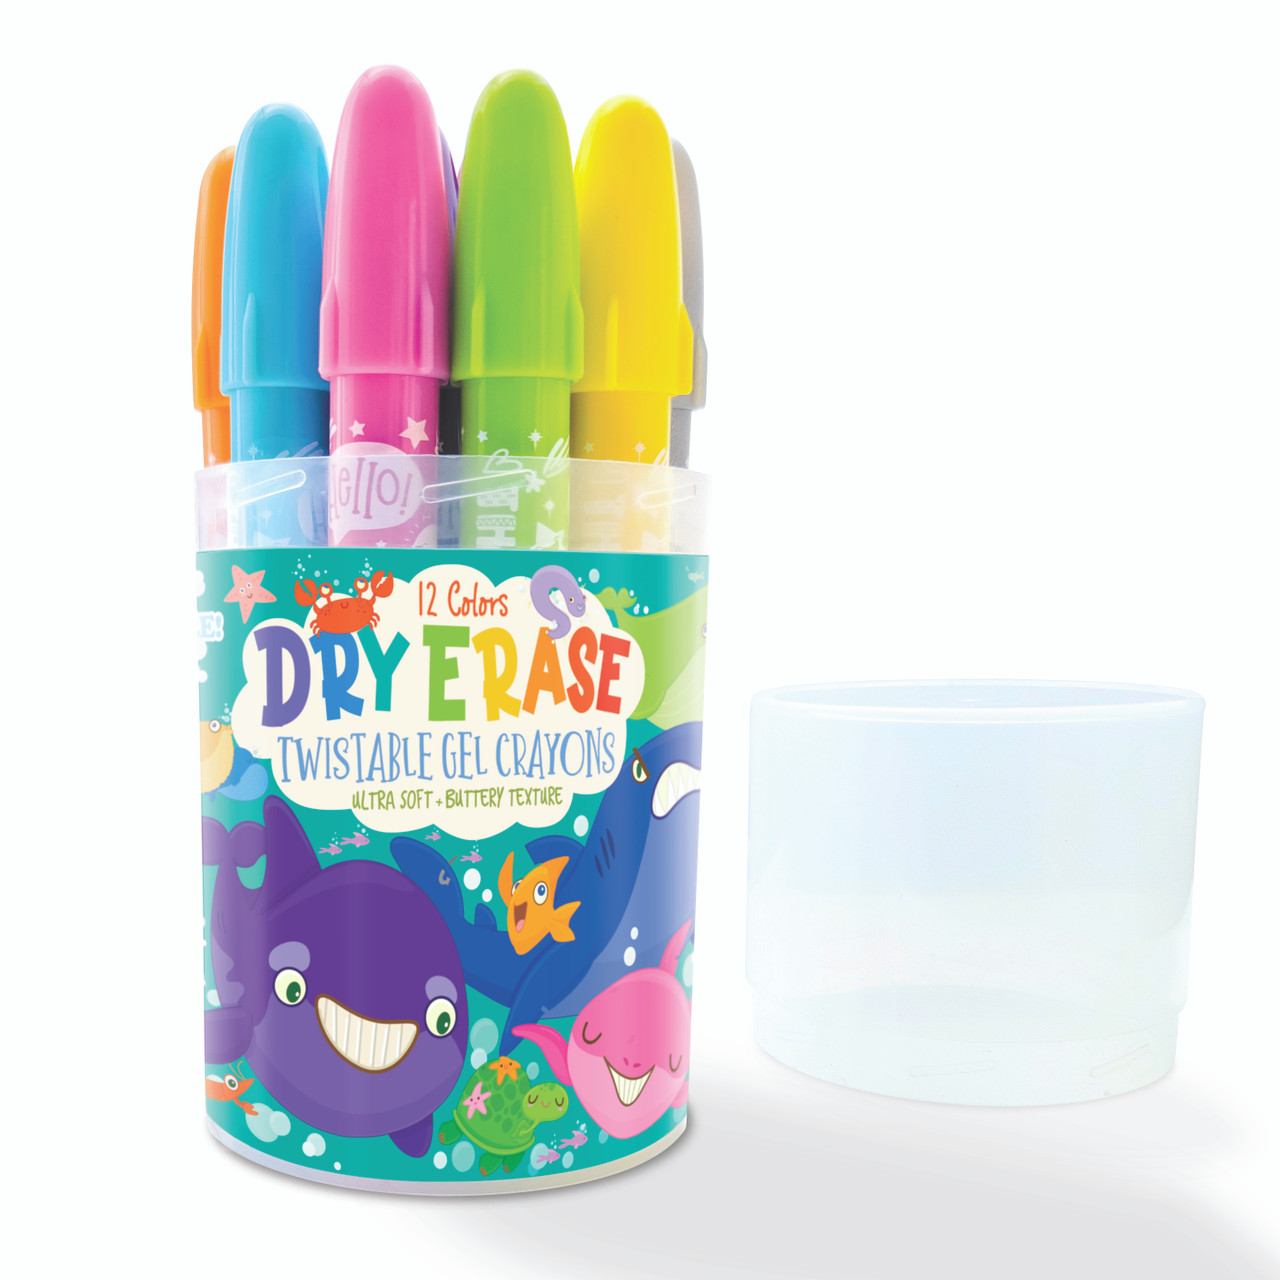 Dry Erase Twistable Gel Crayons | Under the Sea